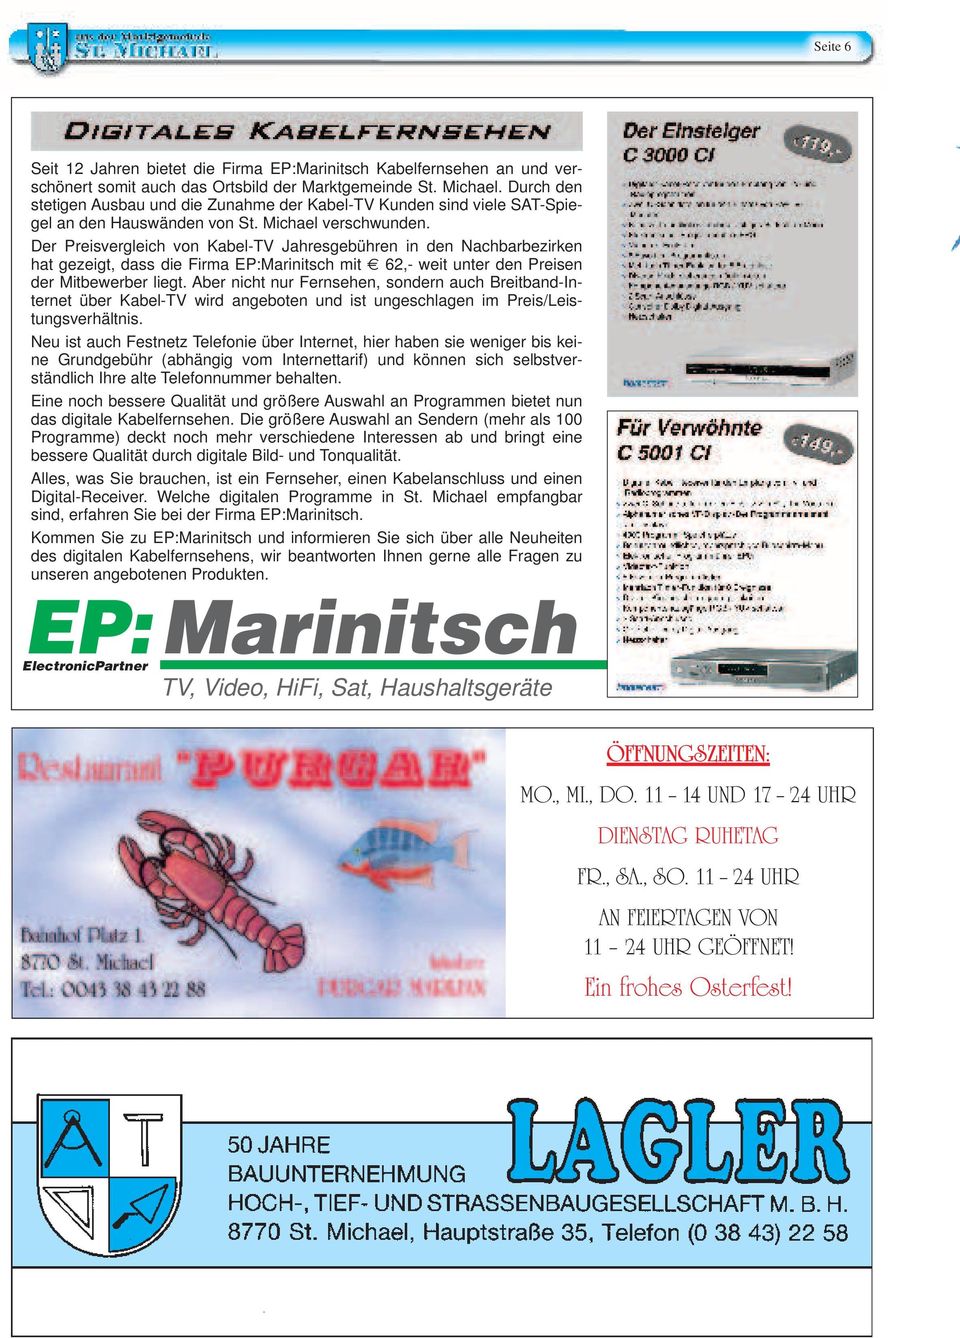 Der Preisvergleich von Kabel-TV Jahresgebühren in den Nachbarbezirken hat gezeigt, dass die Firma EP:Marinitsch mit 62,- weit unter den Preisen der Mitbewerber liegt.